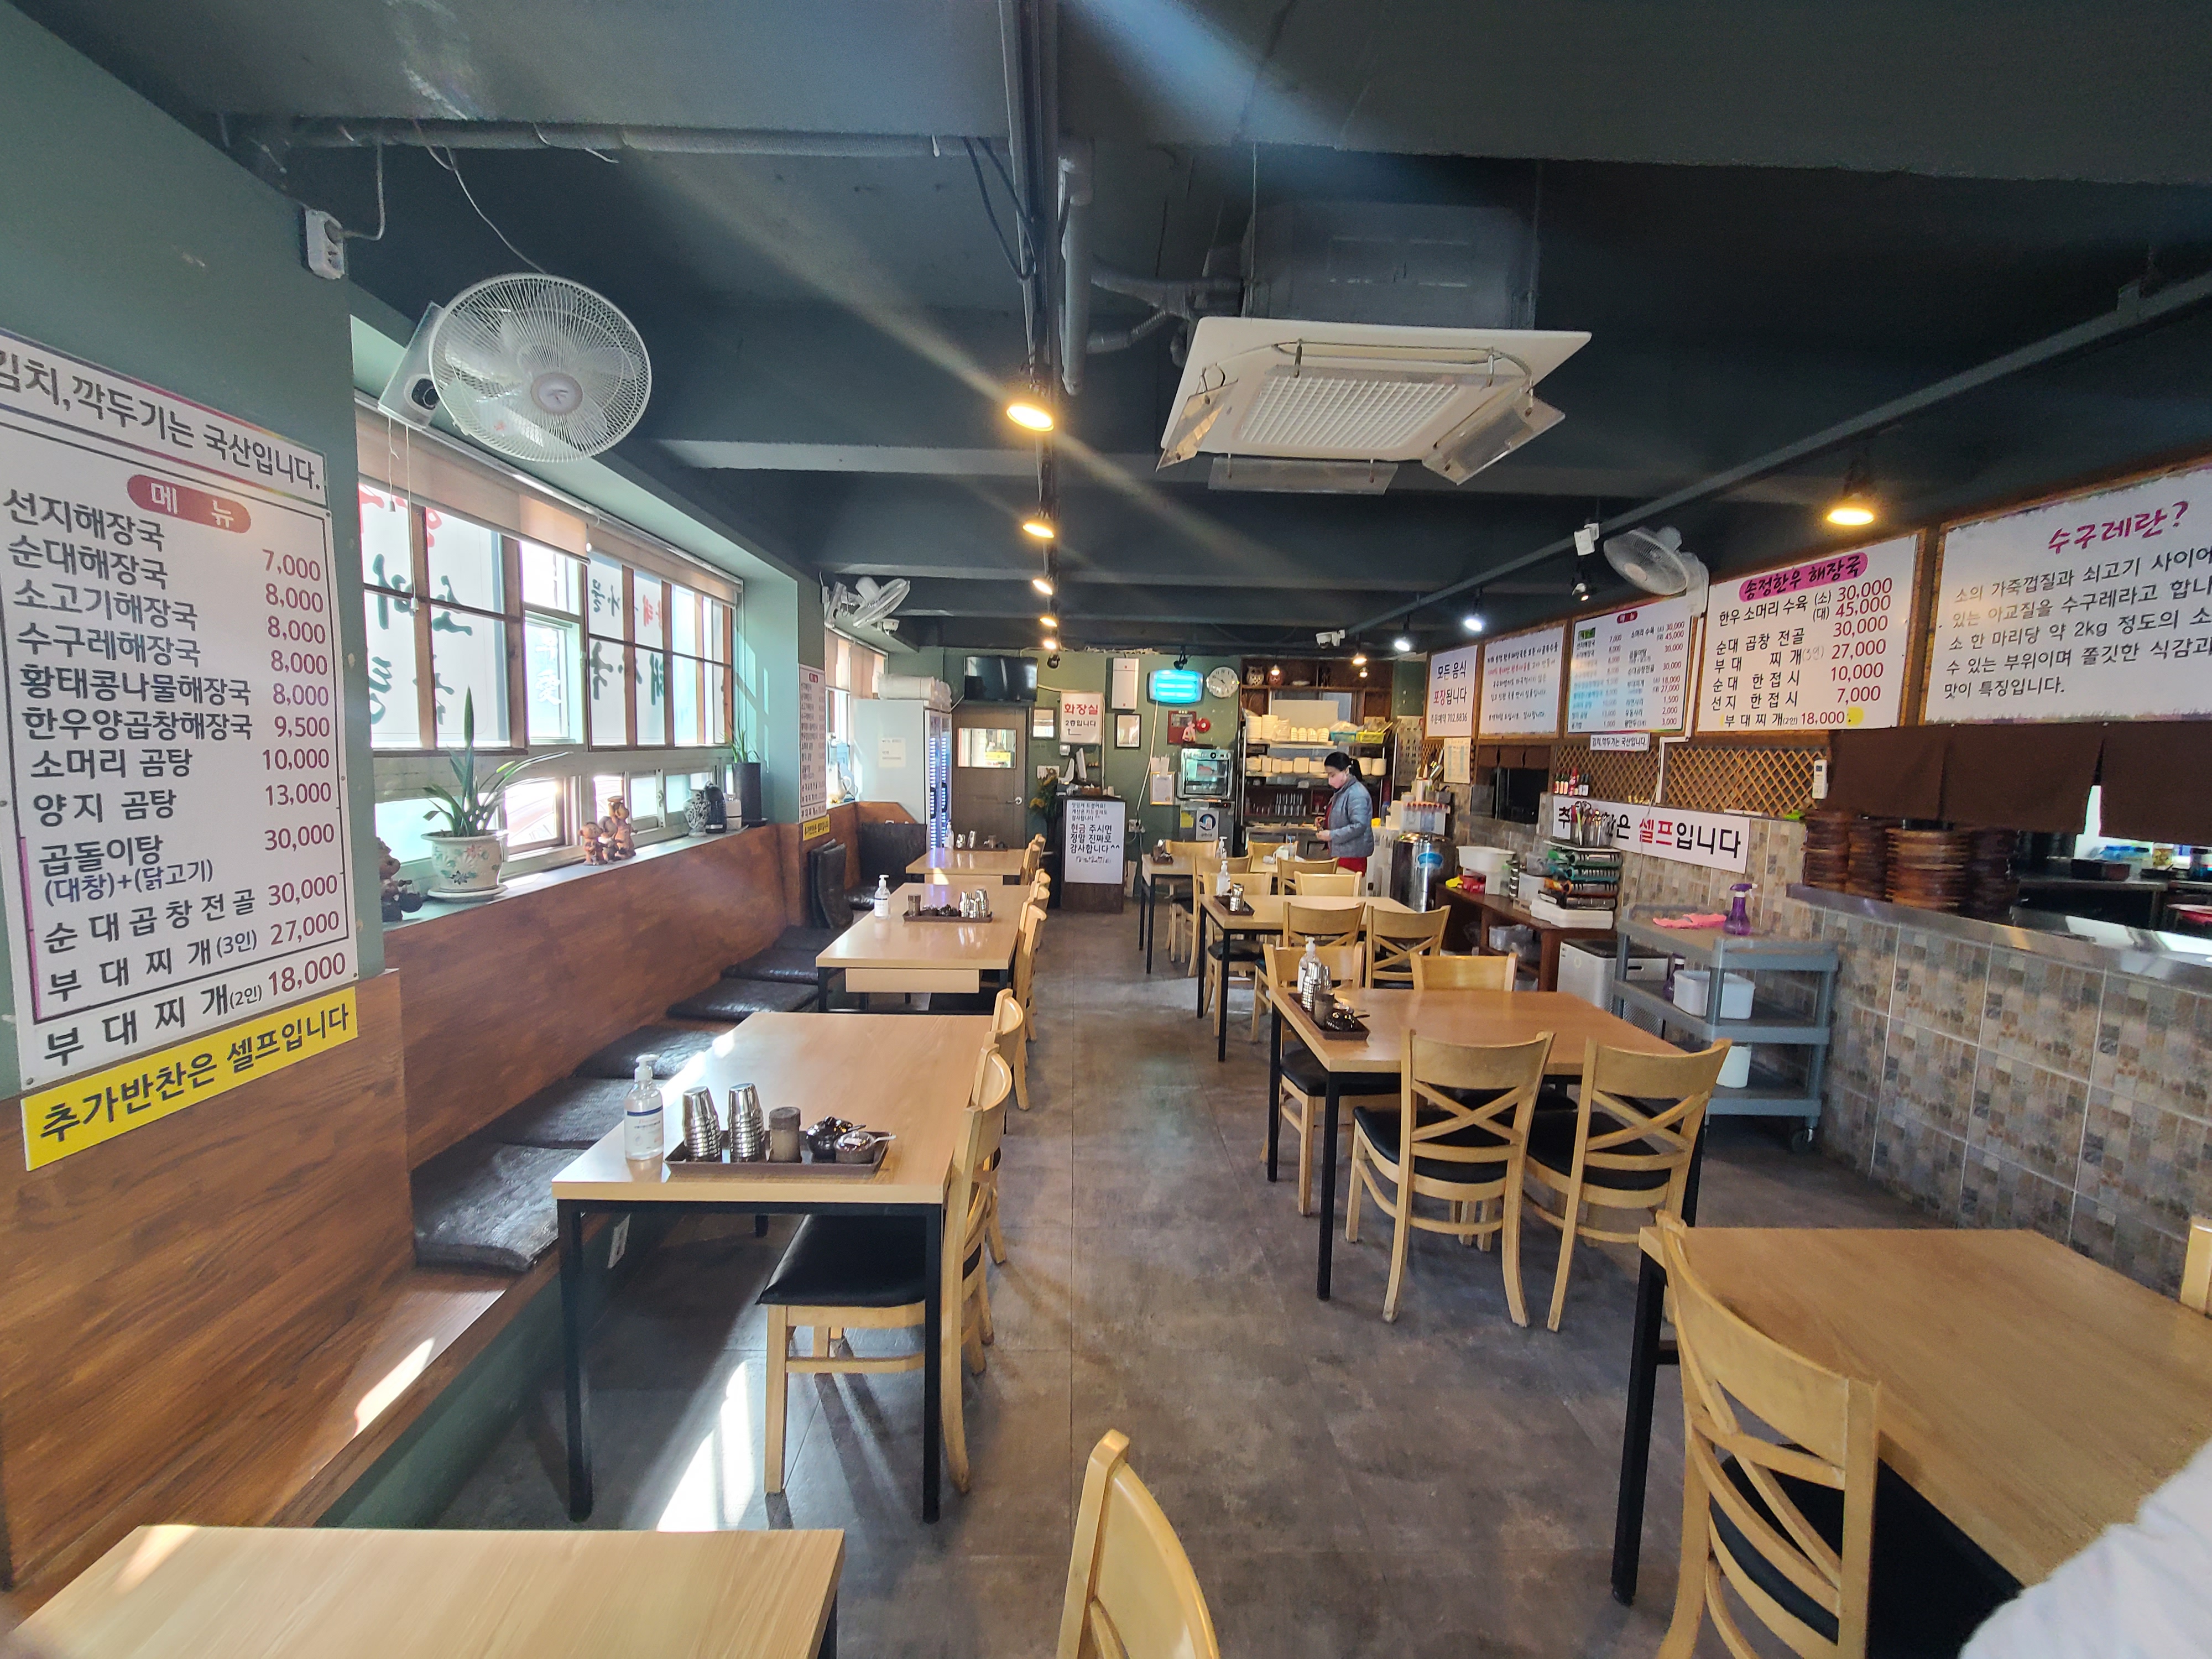 한우 해장국 식당 내부 모습이 담긴 사진